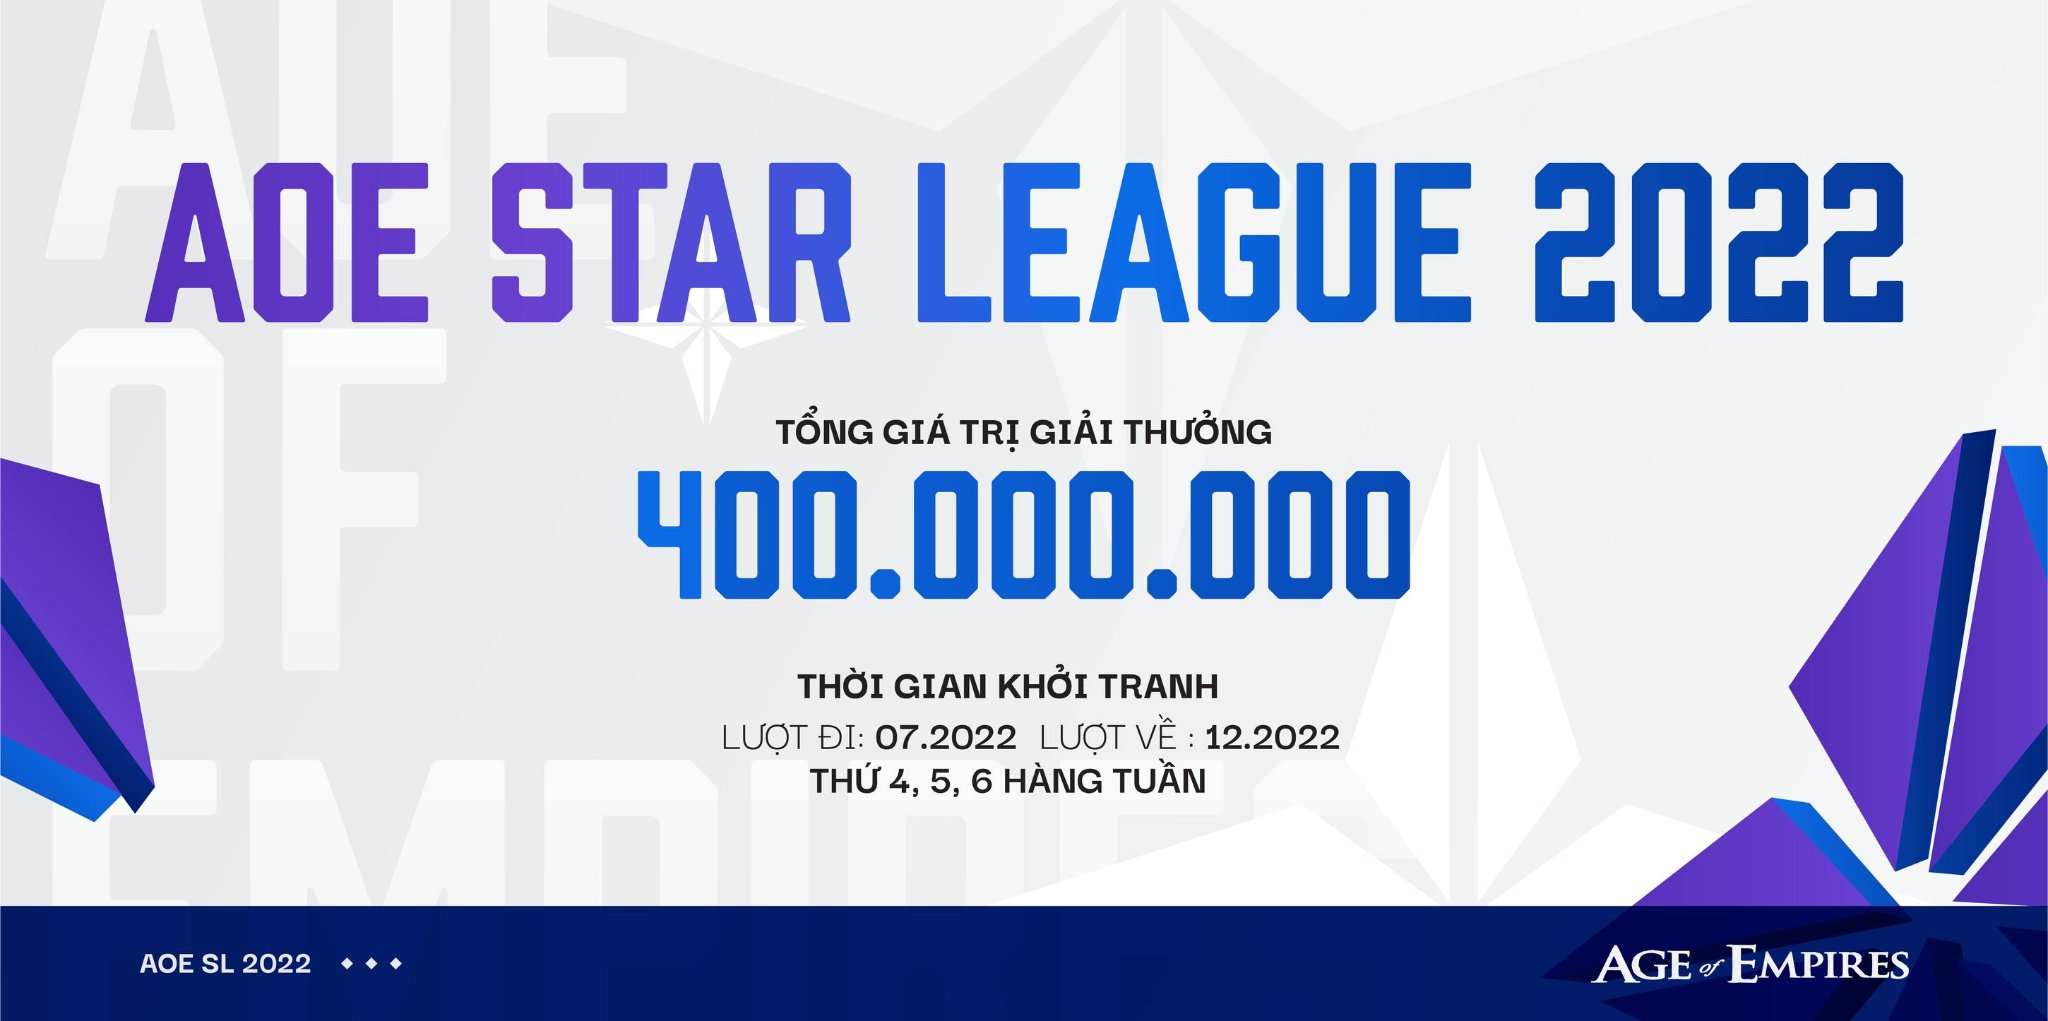 Giải Star League trở lại, khi nào sẽ tiếp tục thi đấu?